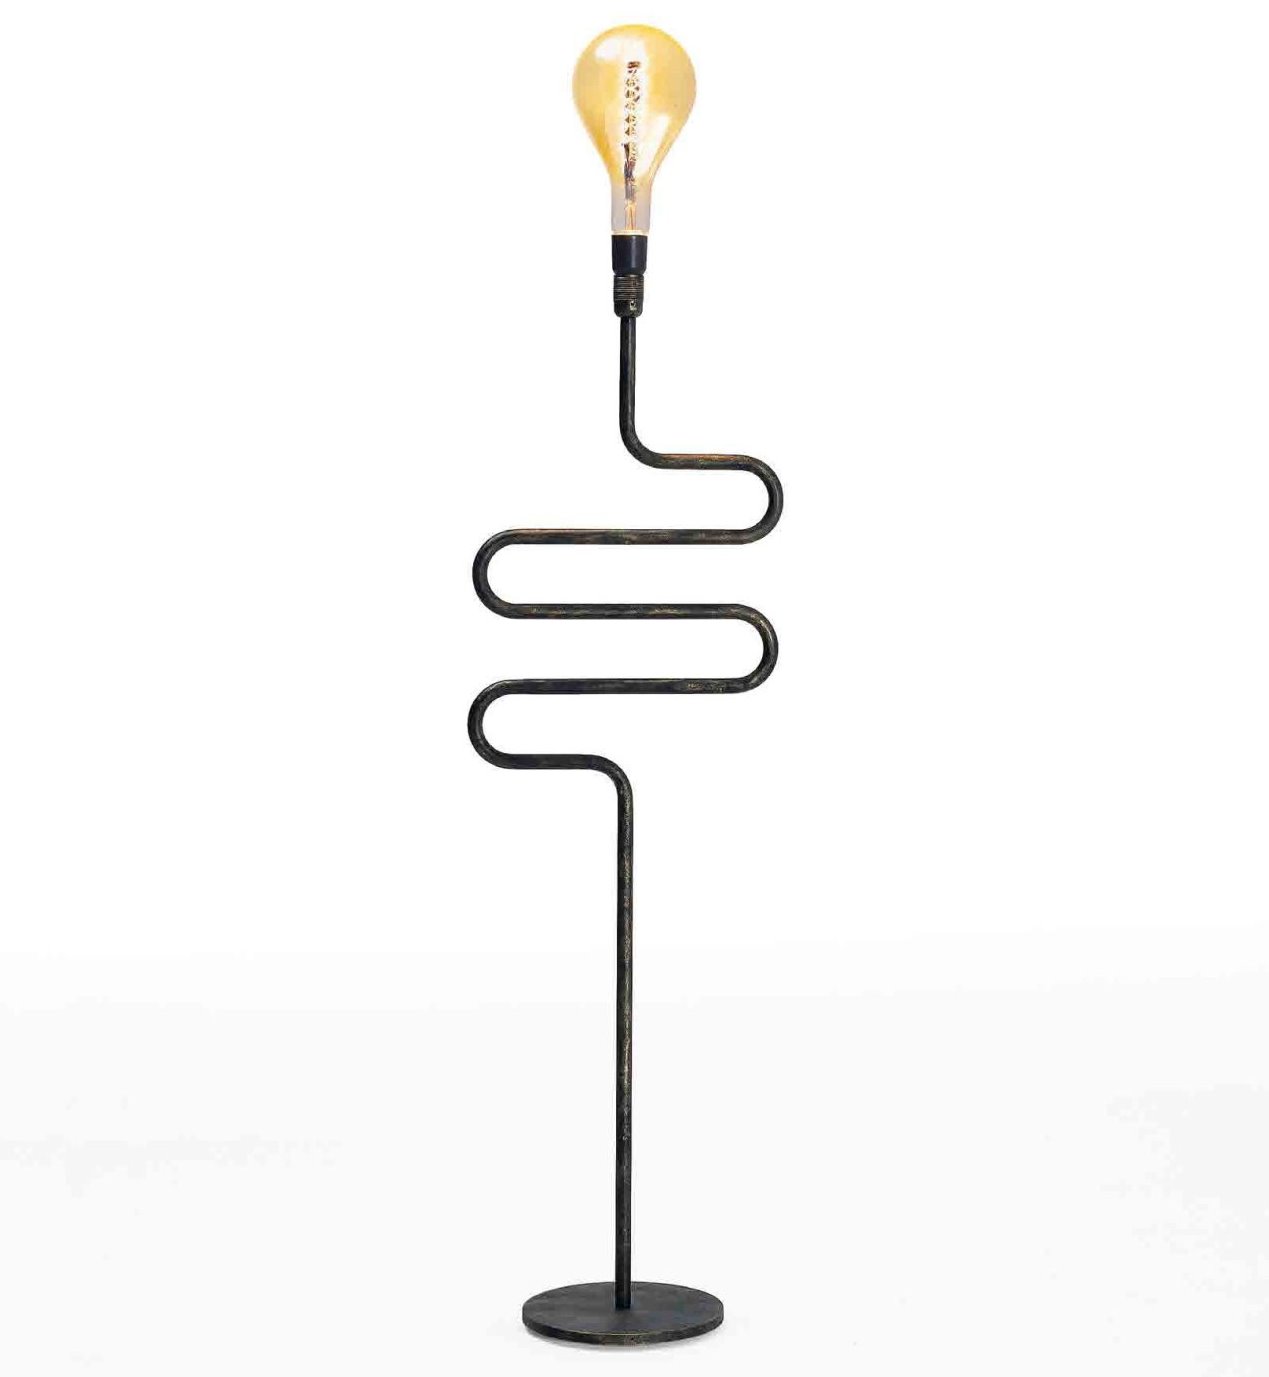 Lampada Lampadino di Colico Design, in vendita online su ArredaClick